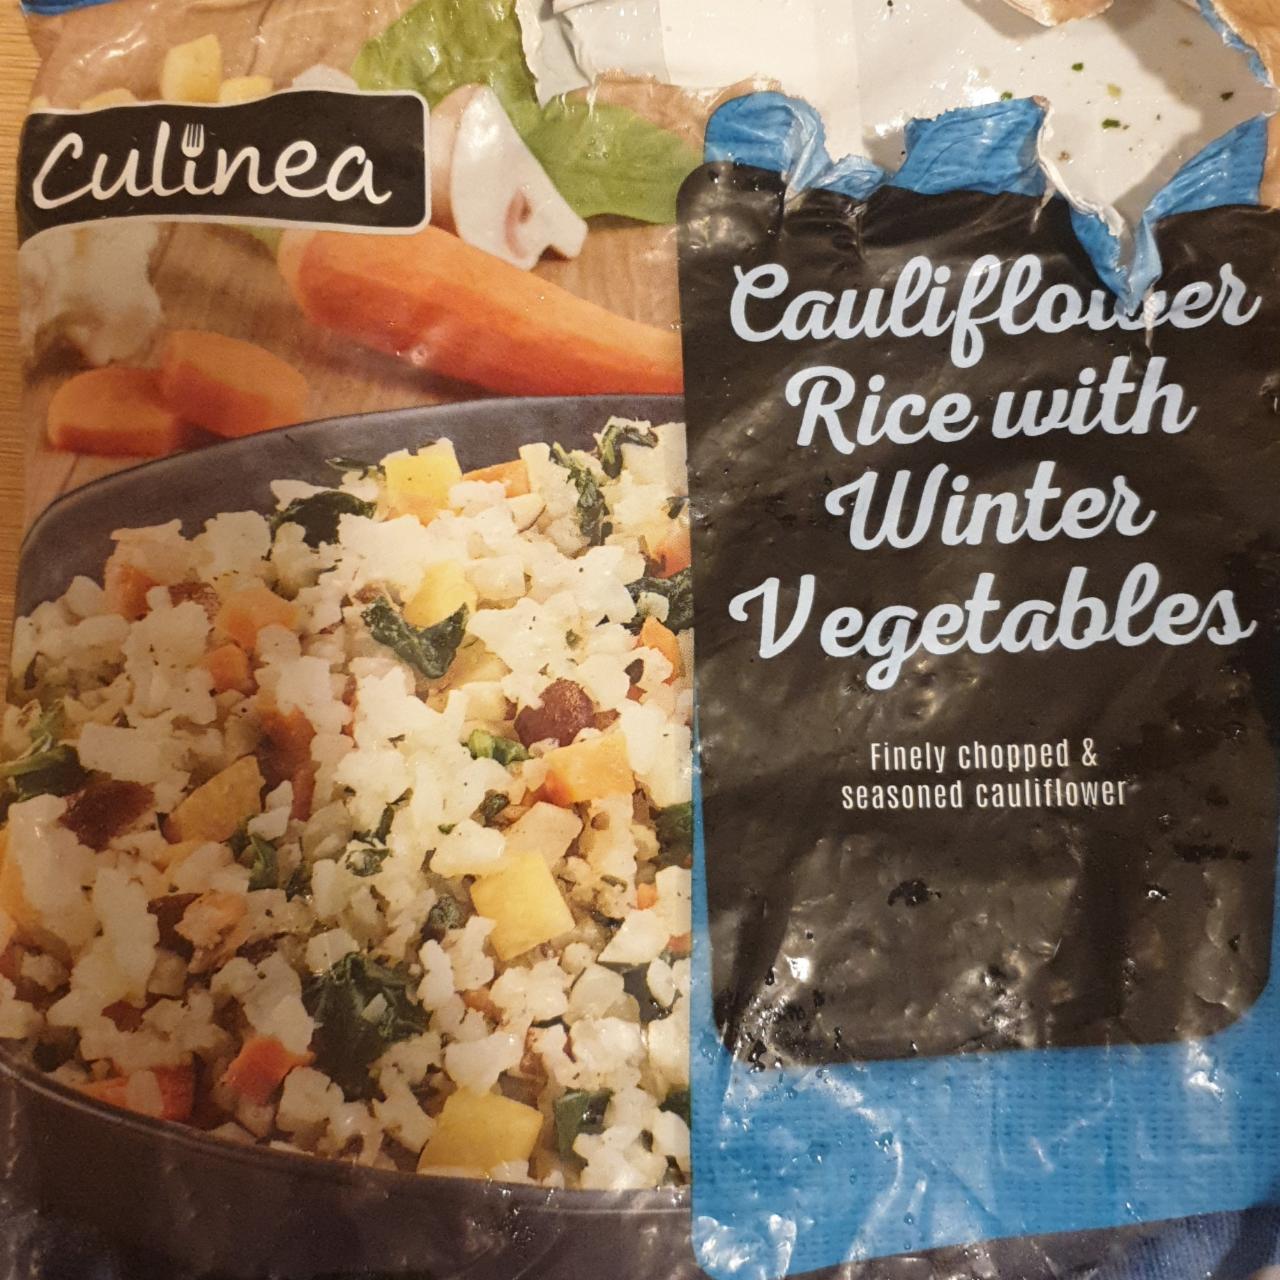 Képek - Apróra vágott karfiol zöldségekkel, fűszerezve, gyorsfagyasztott Culinea